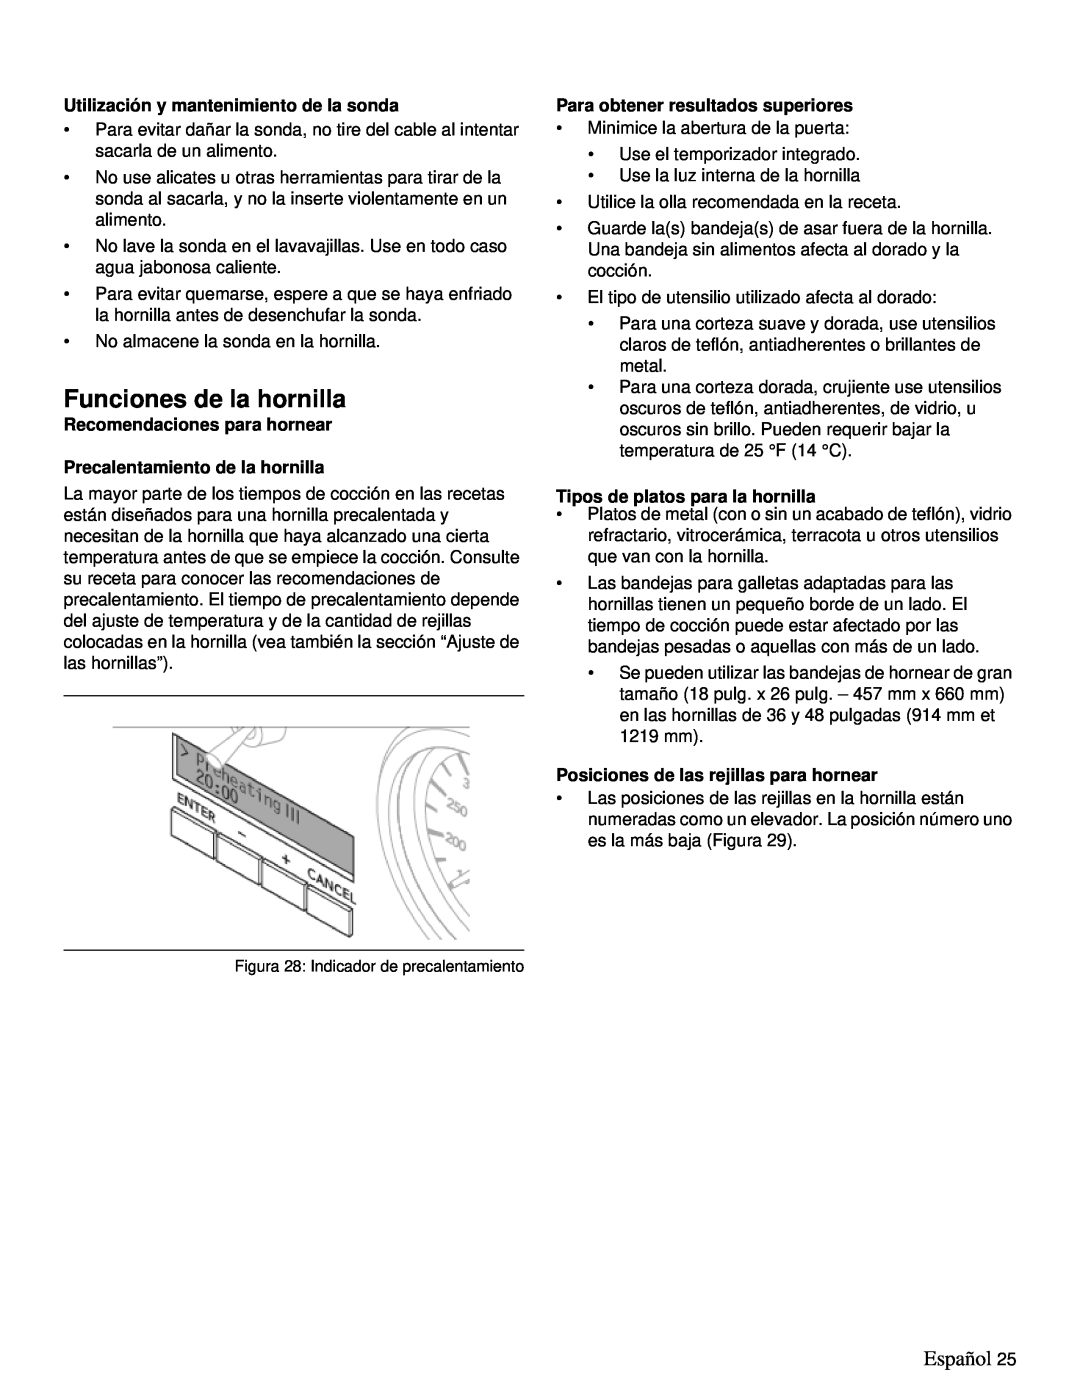 Thermador PRD36 Funciones de la hornilla, Español, Utilización y mantenimiento de la sonda, Recomendaciones para hornear 